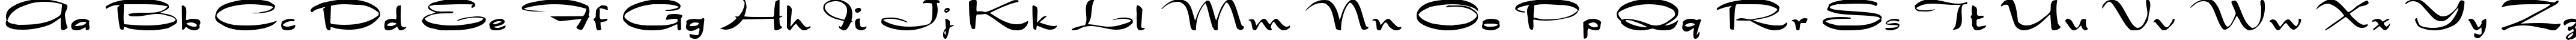 Пример написания английского алфавита шрифтом Dragonwick Regular